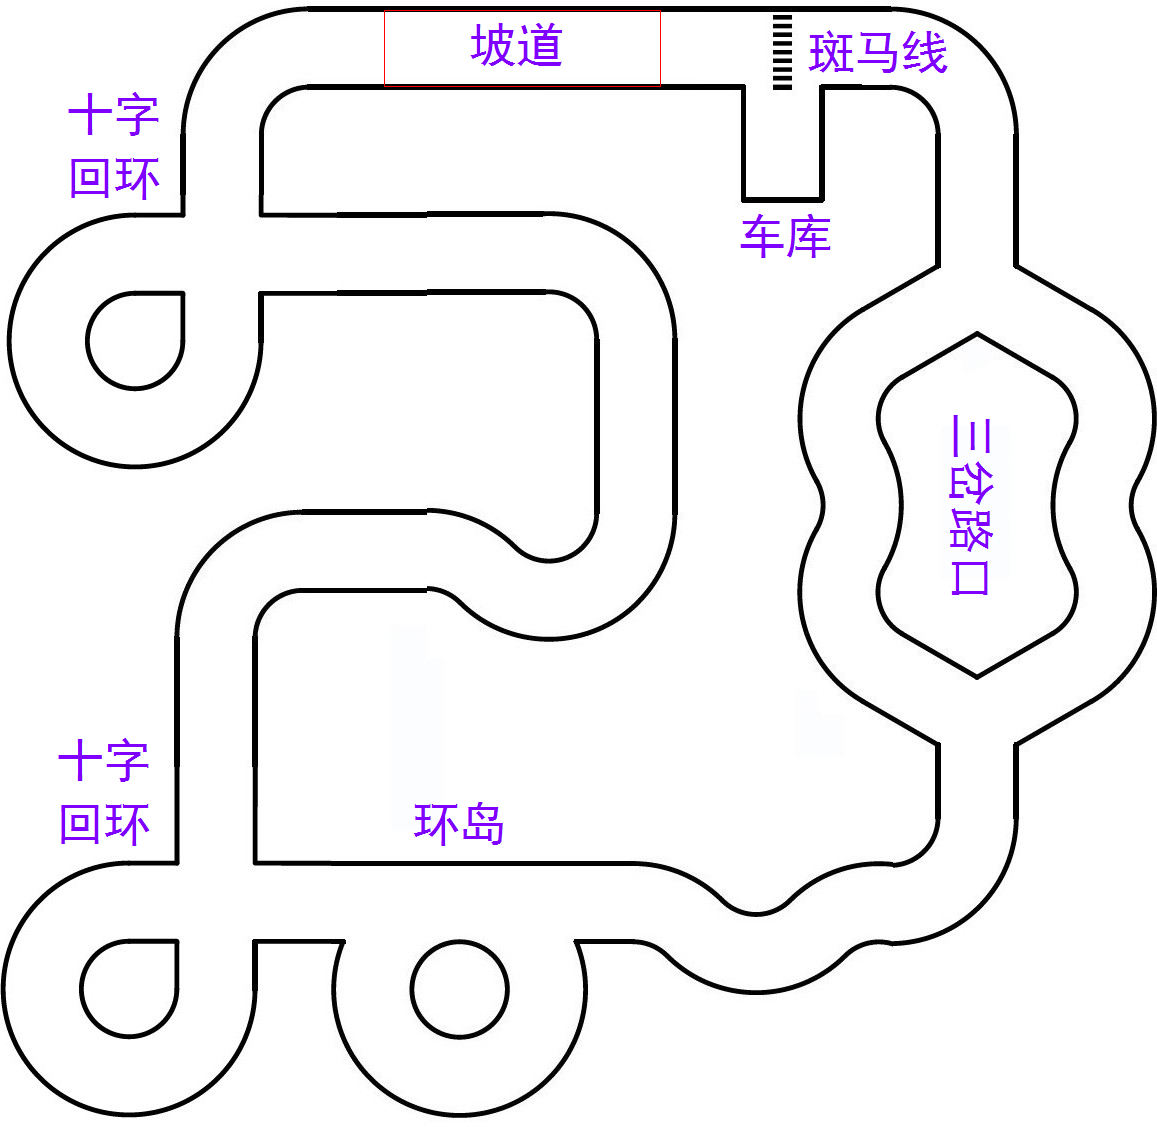 ▲ 图3.1.16 室内循环赛道示意图